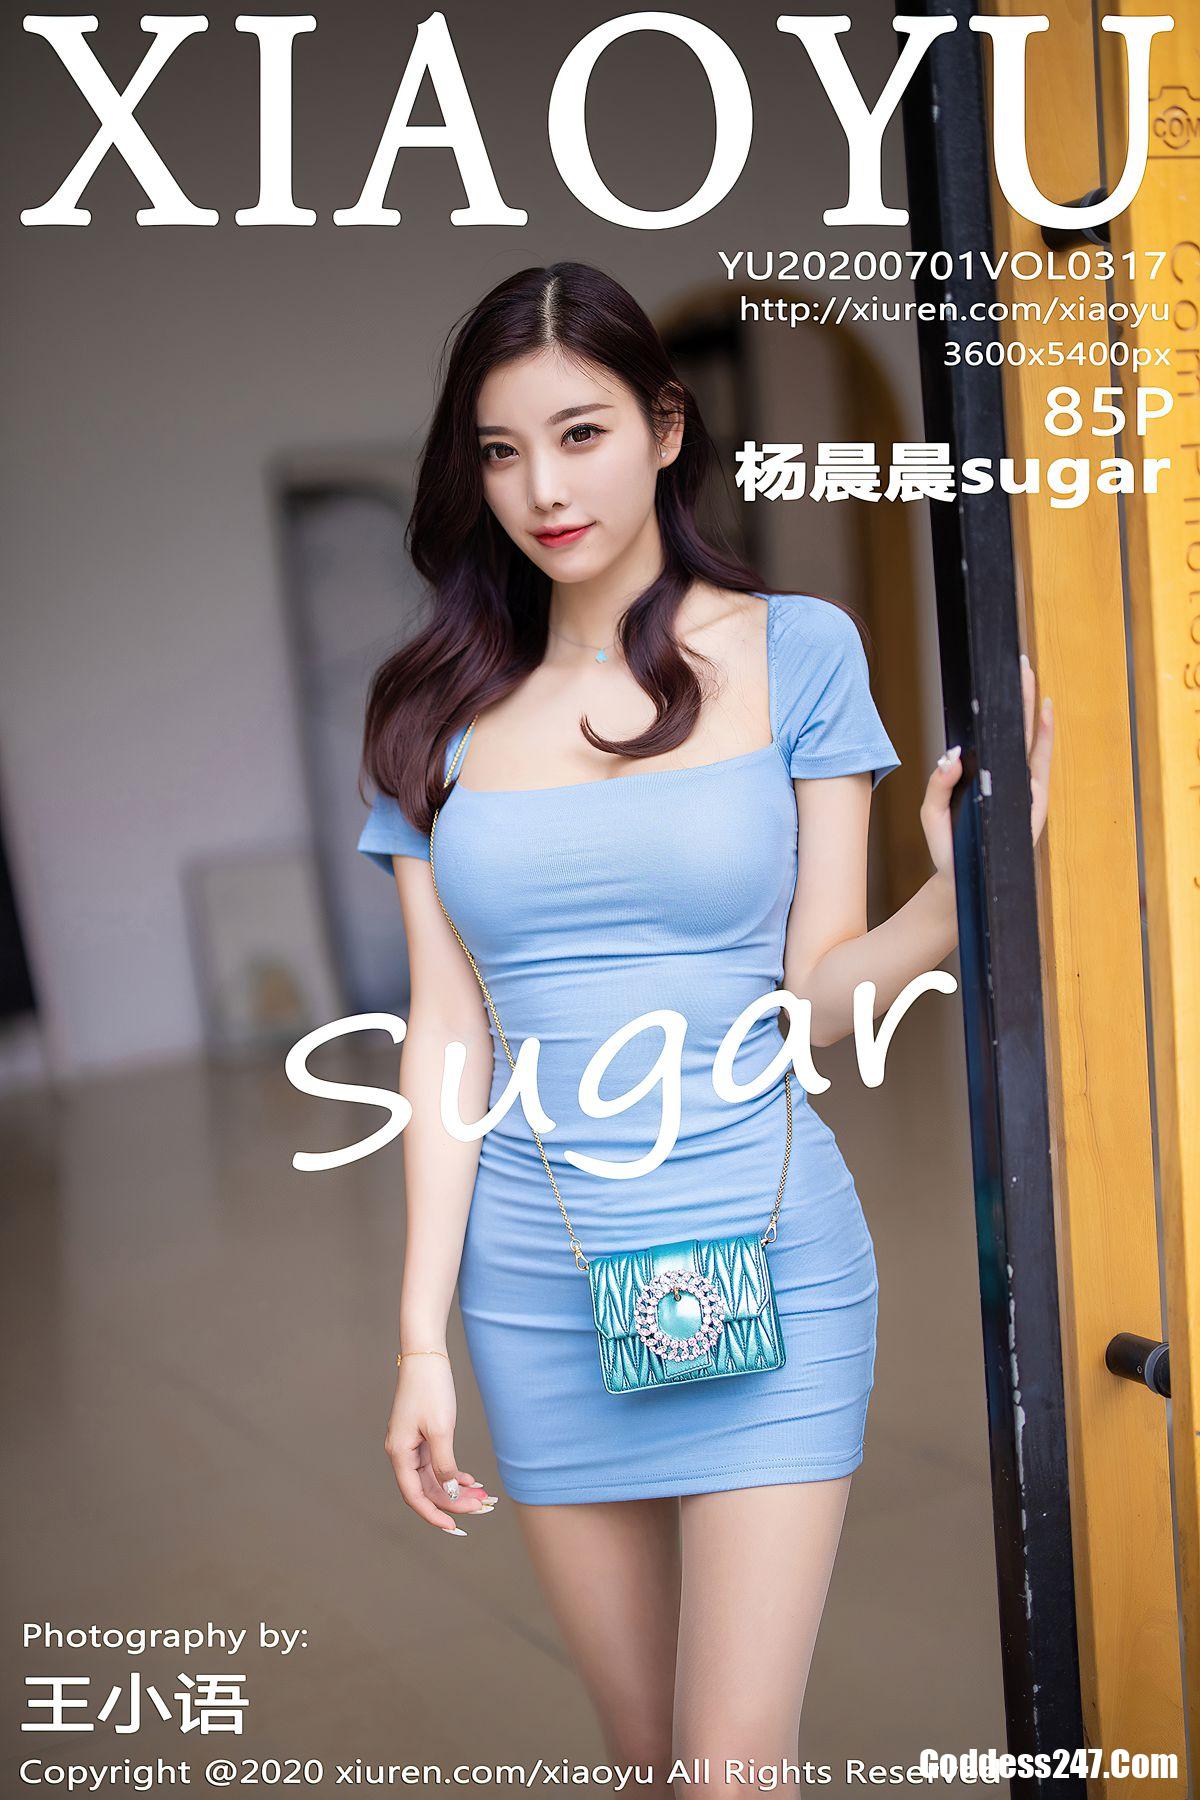 xiaoyu vol 317 杨晨晨sugar goddess247